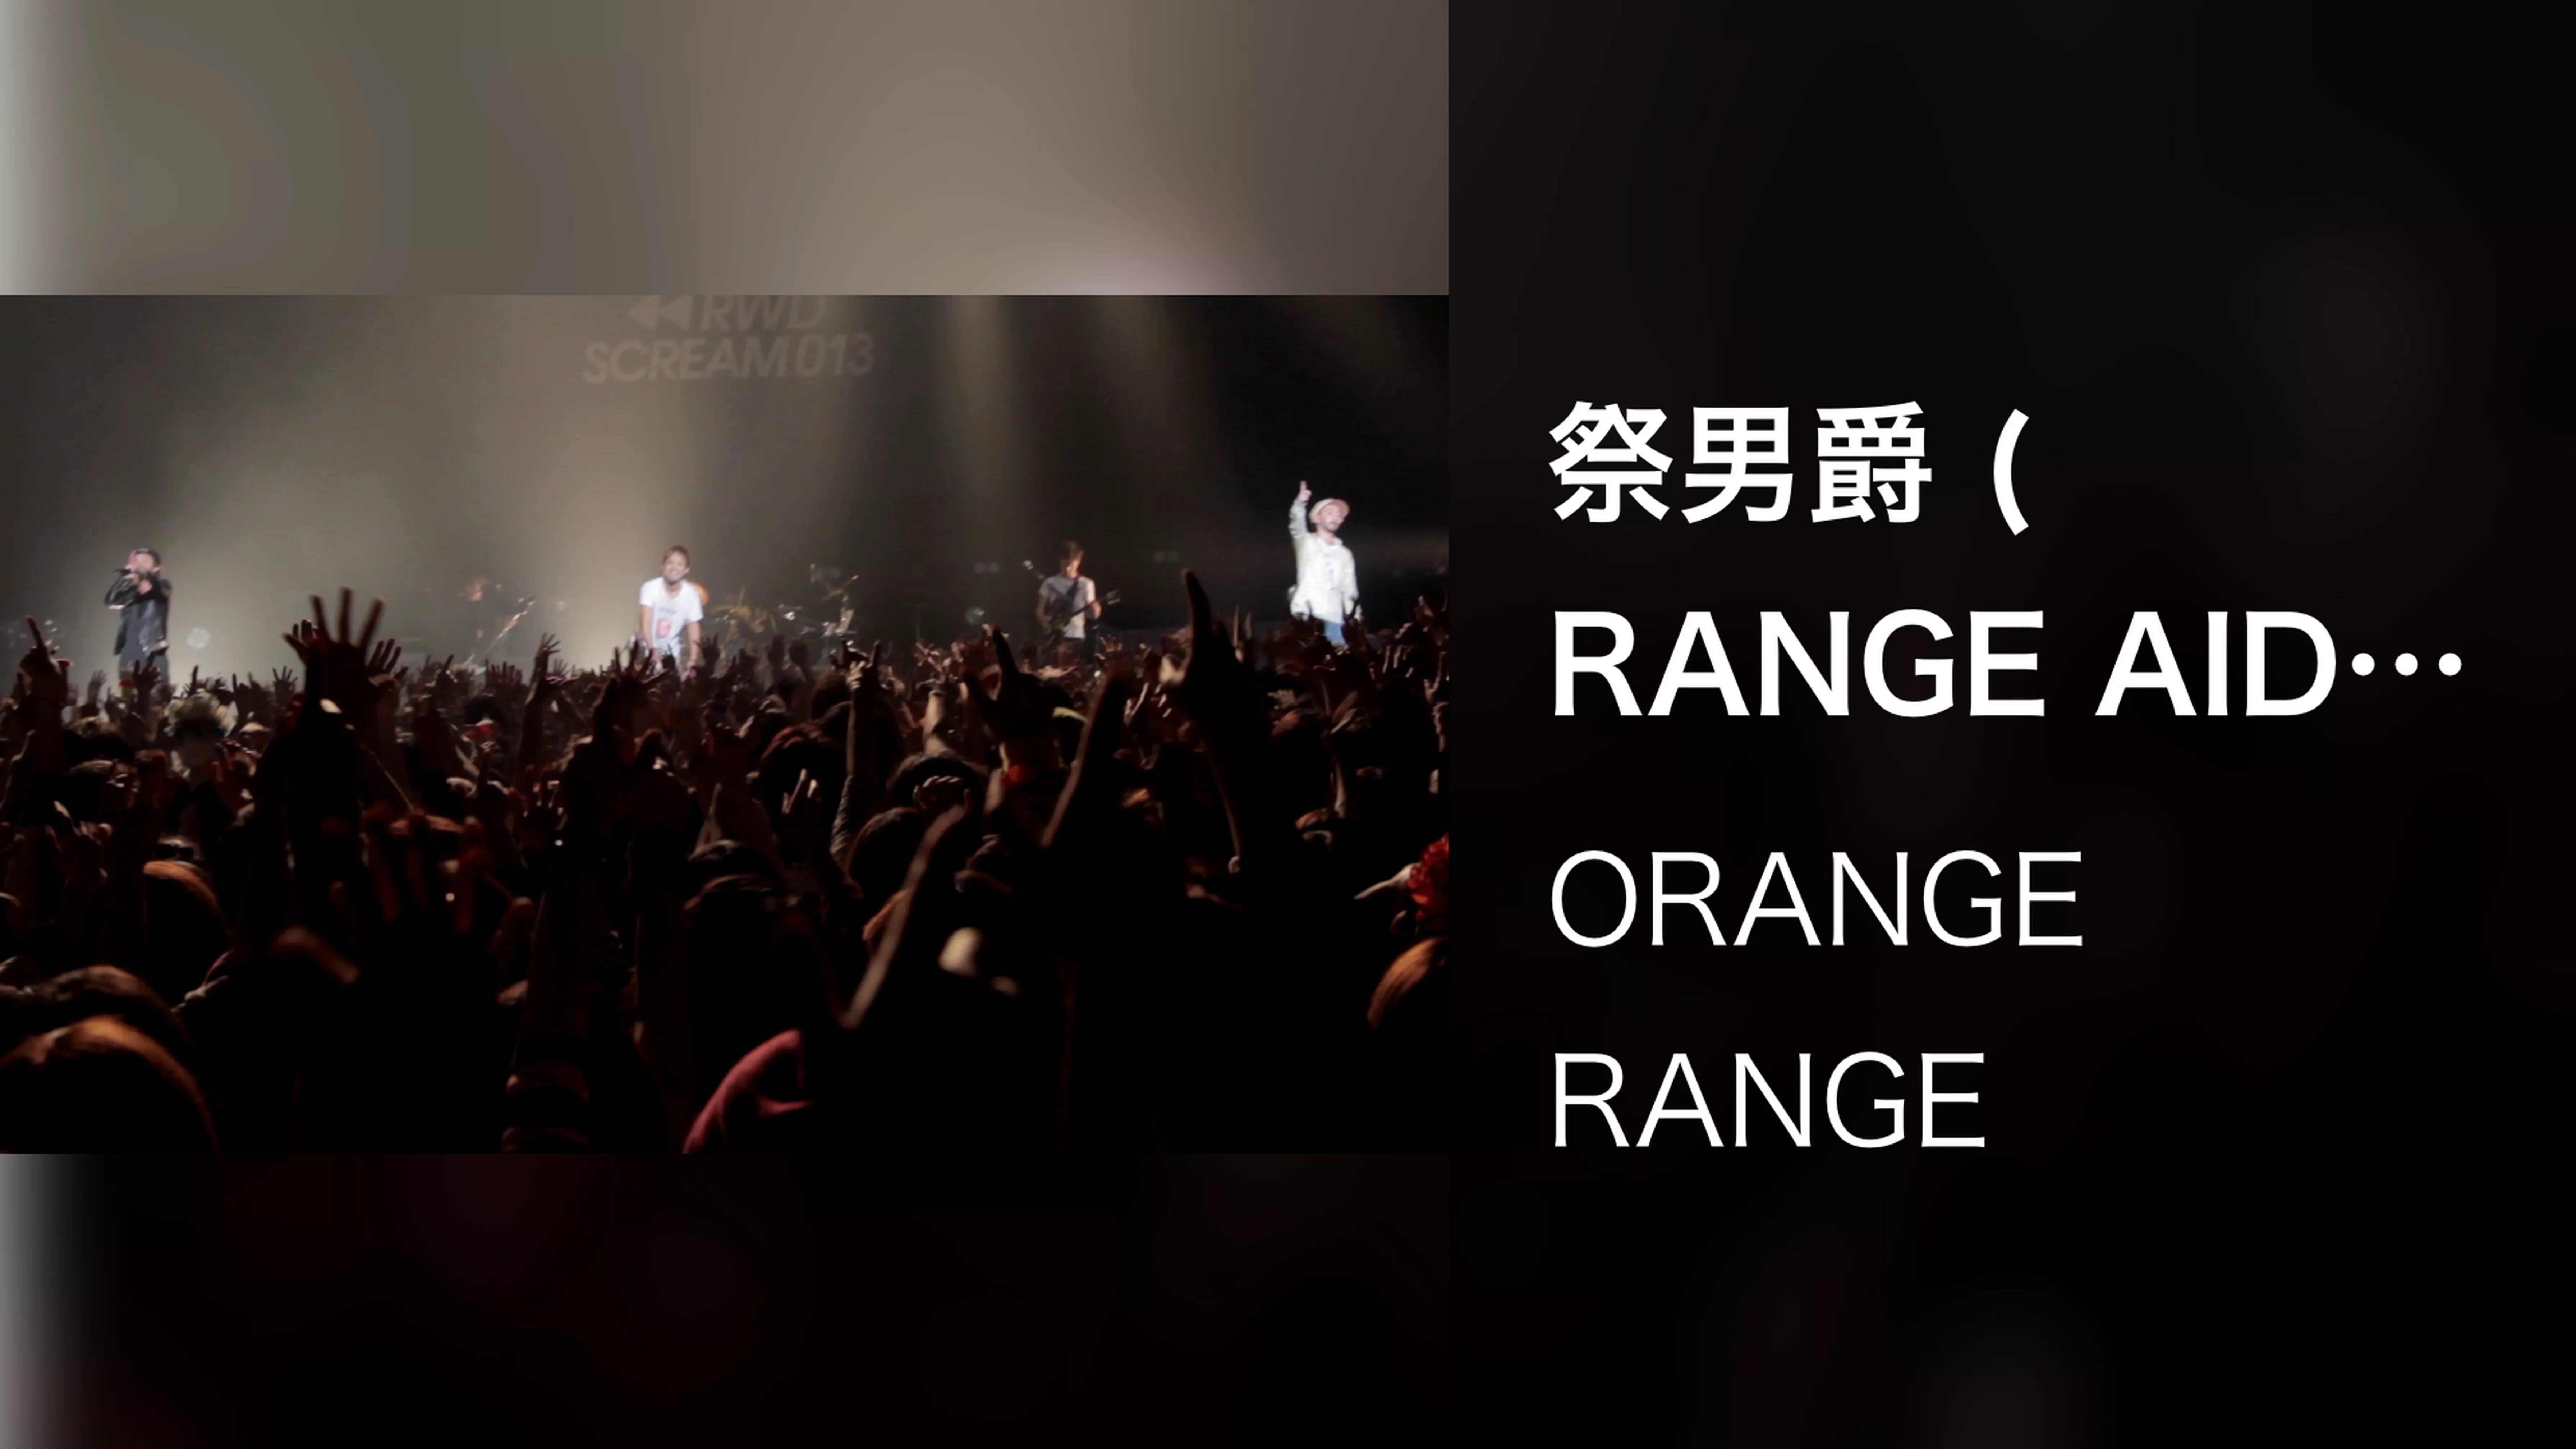 祭男爵 (RANGE AID+ presents RWD← SCREAM 013 / 2013.02.23@Zepp Tokyo)